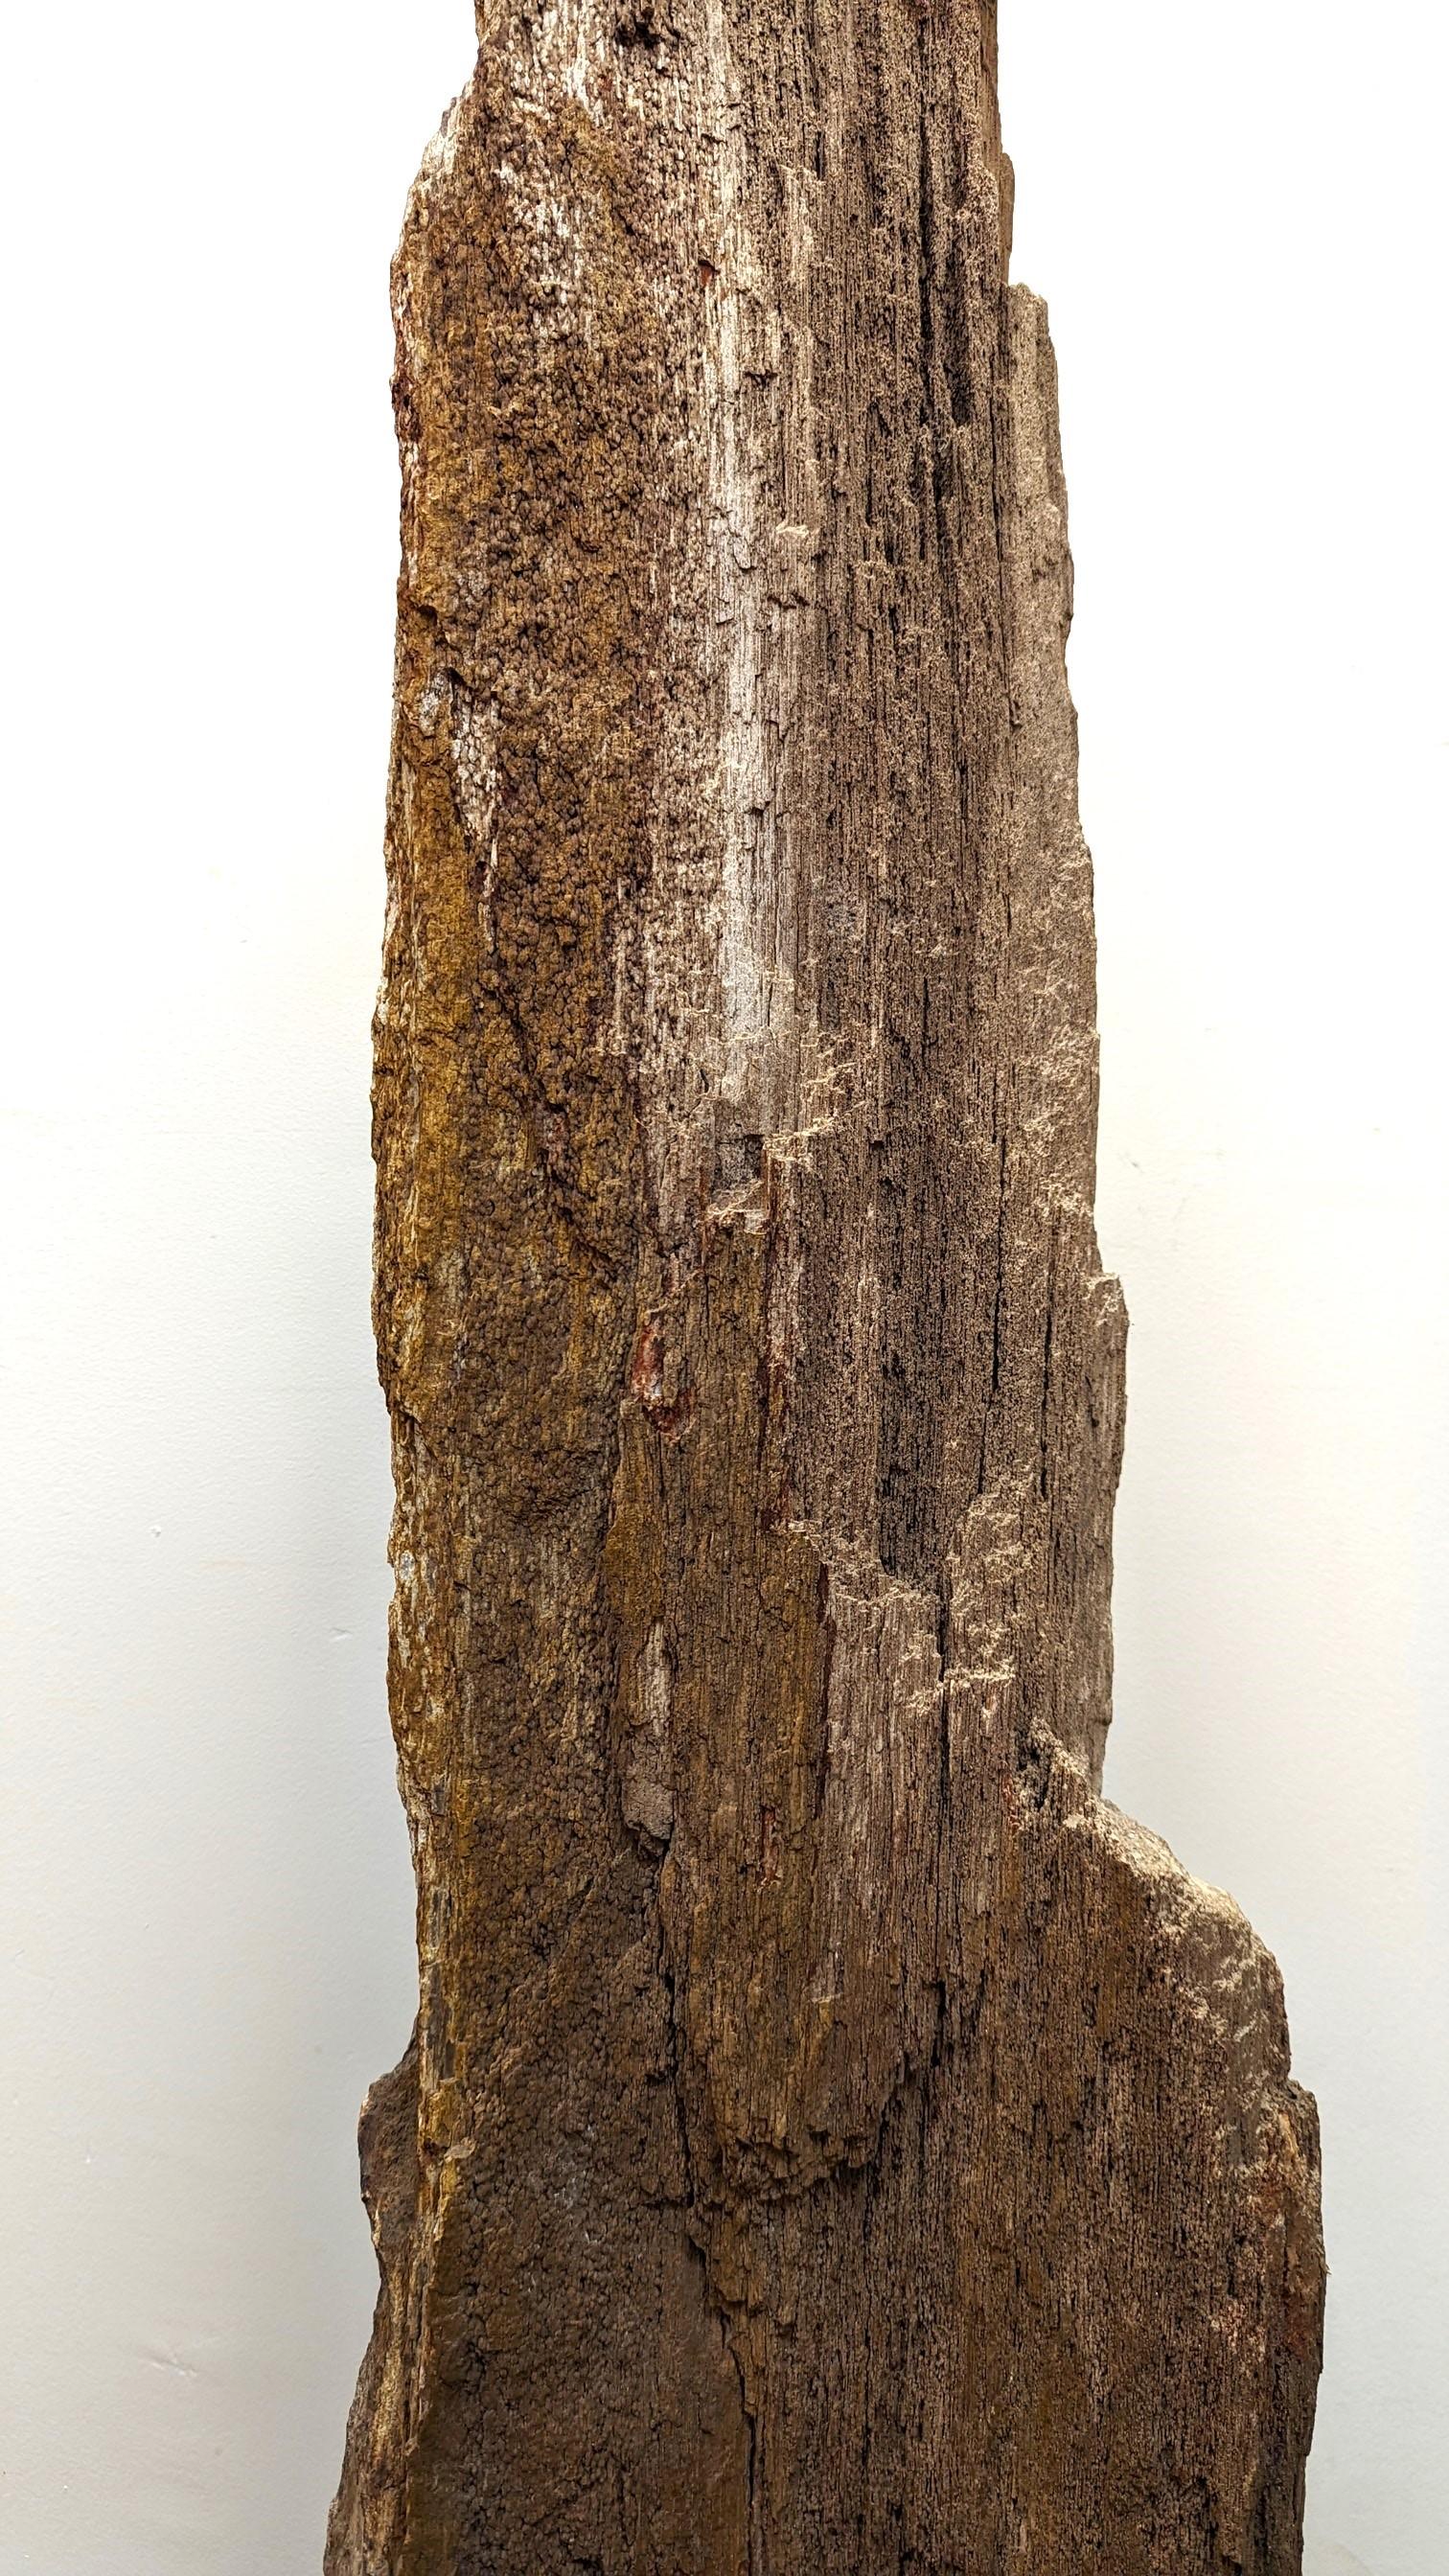 Un morceau naturel de bois pétrifié monté sur un socle.  Fossile brut naturel entièrement biologique, nettoyé pour l'exposition.  Apparaissant comme une montagne imposante  avec des pics en saillie.  À l'arrière, on peut voir des restes de l'écorce